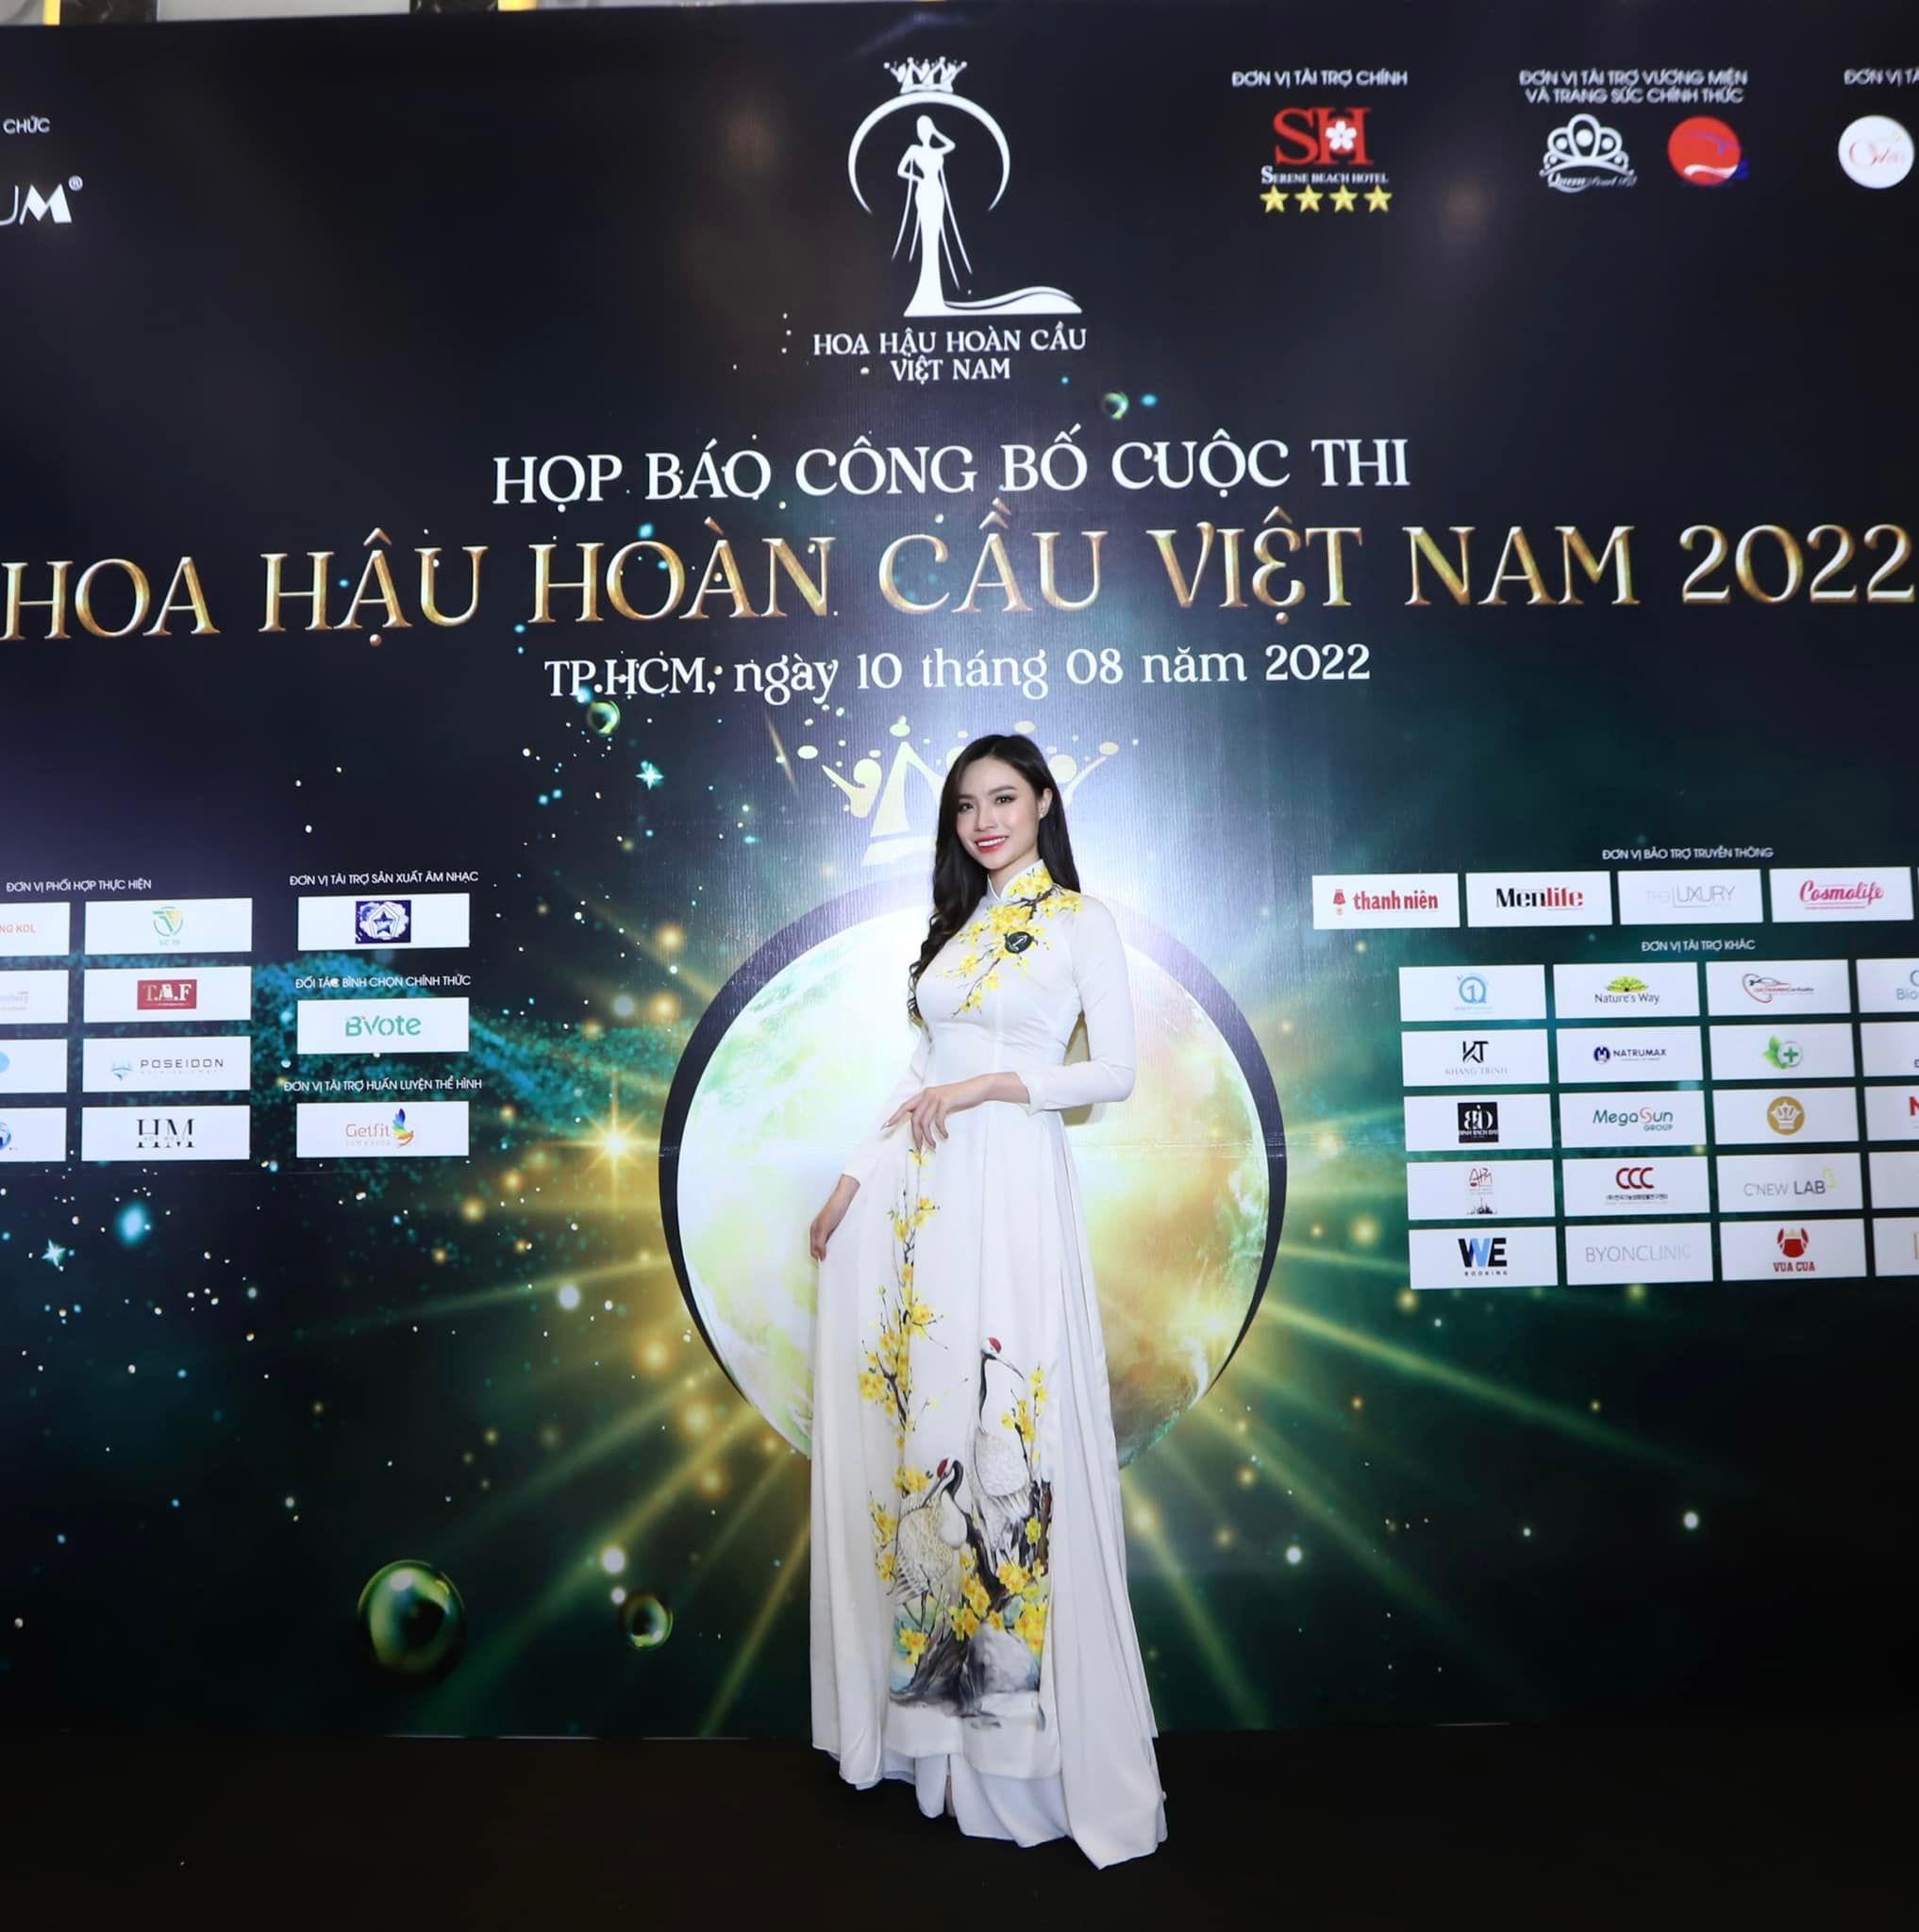 Khởi động cuộc thi Hoa hậu Hoàn cầu Việt Nam 2022 10